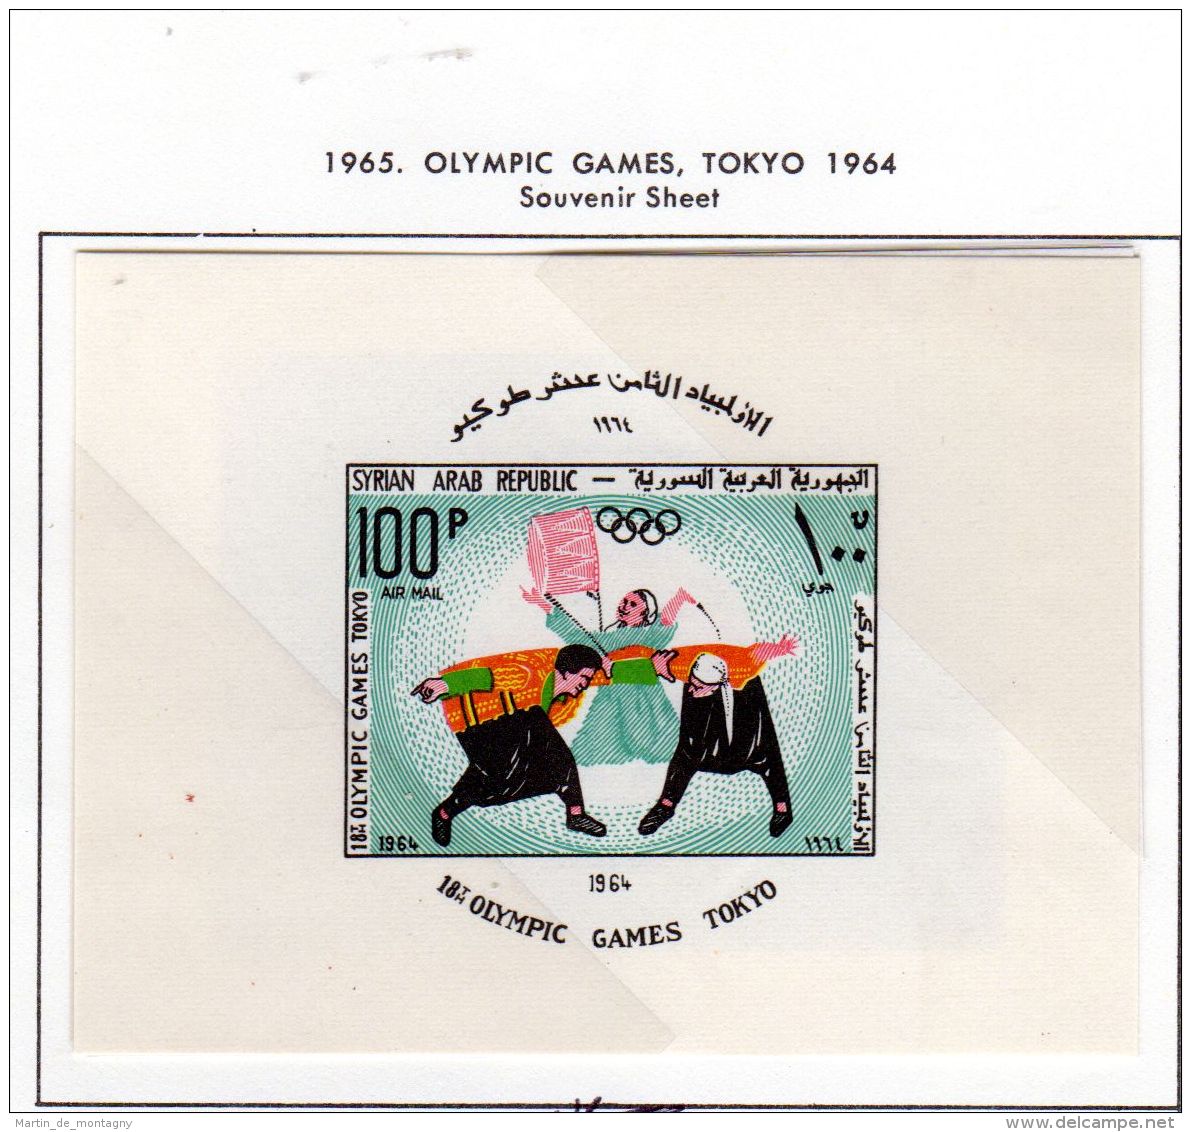 Kleine Sammlung SYRIEN; von 1961 - 1971, neu mit Falz, postfrisch, gestempelt, gem. Scan, Los 49830